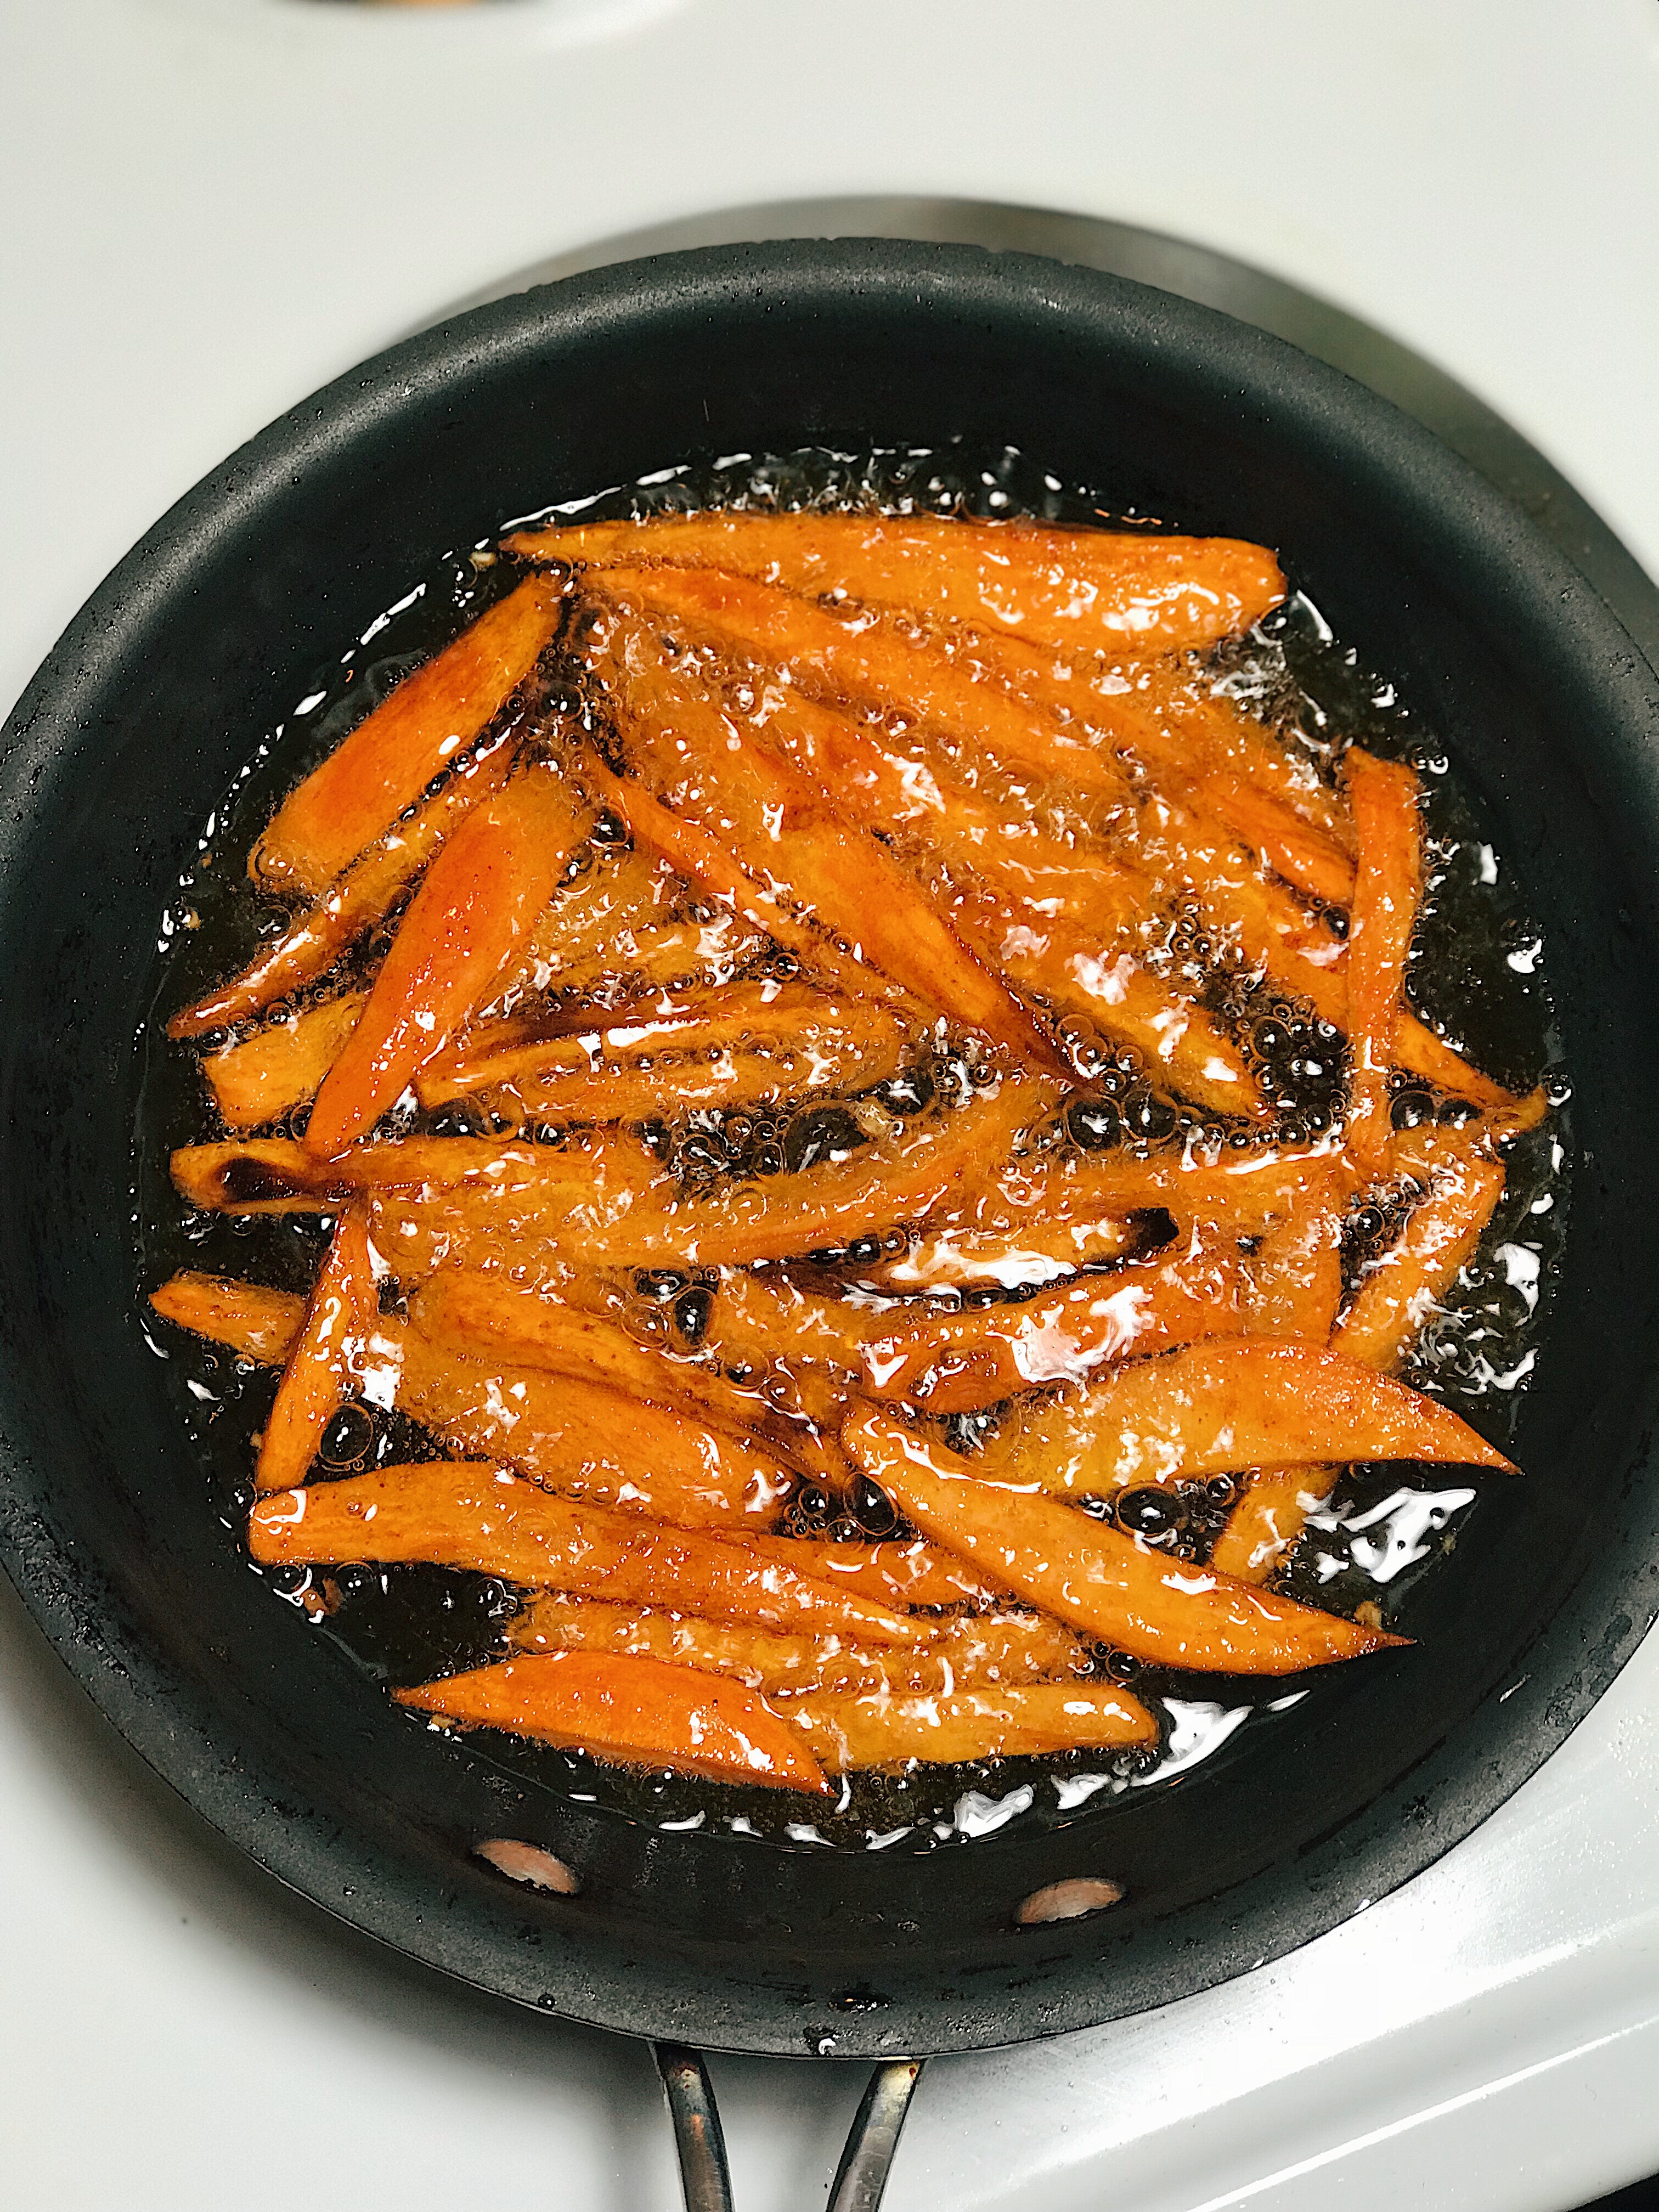 how to make sweet potato fries easy recipe